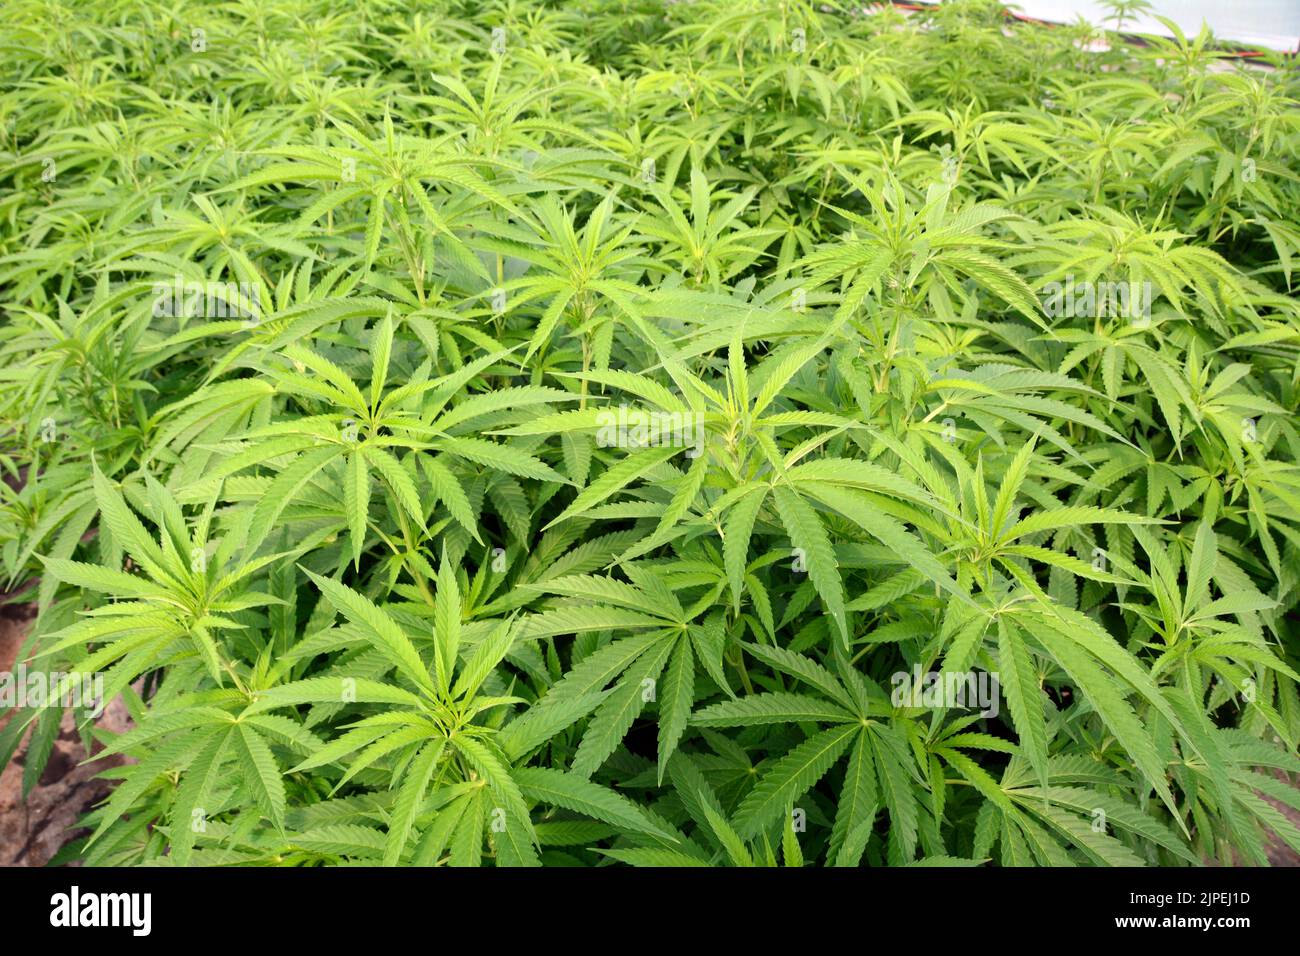 La marijuana ricreativa legale o piante di cannabis sono cresciute in una serra in una fattoria sostenibile vicino alla città di Creemore, Ontario, Canada. Foto Stock